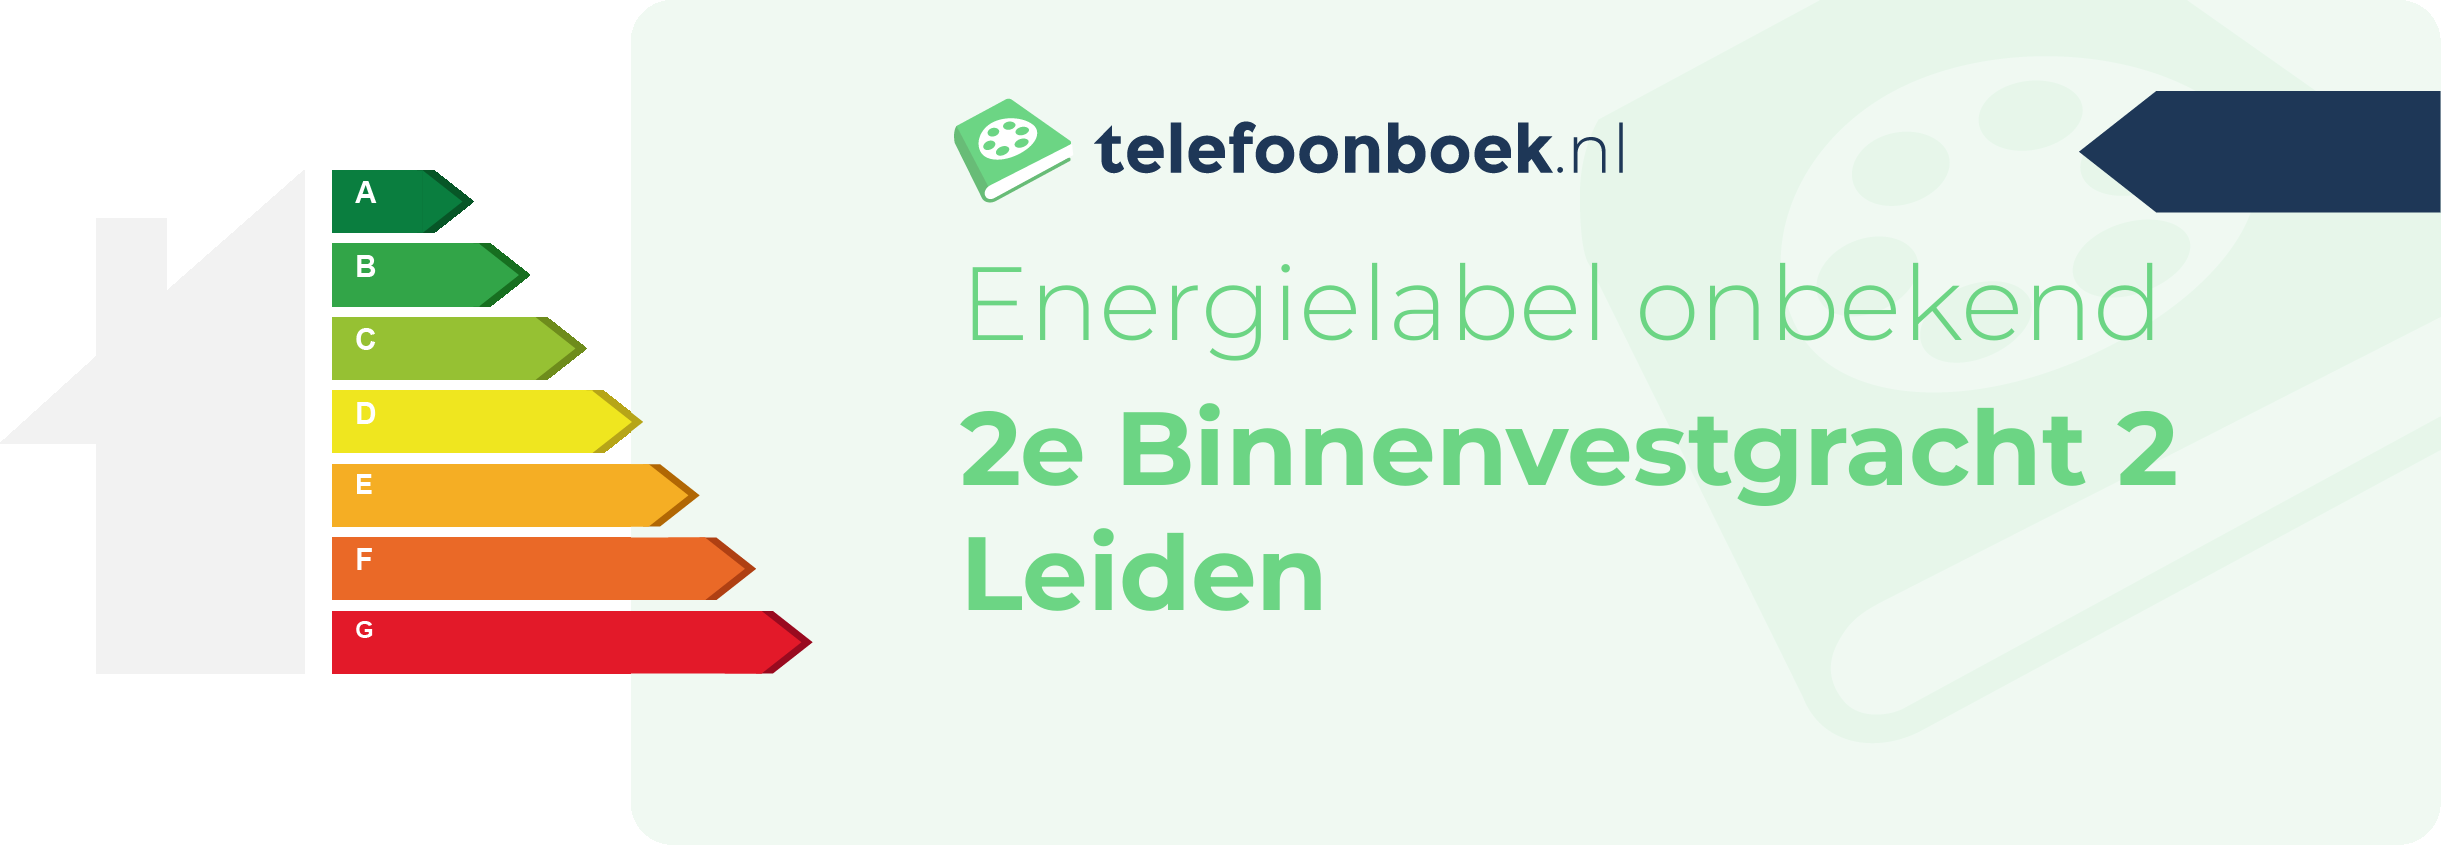 Energielabel 2e Binnenvestgracht 2 Leiden